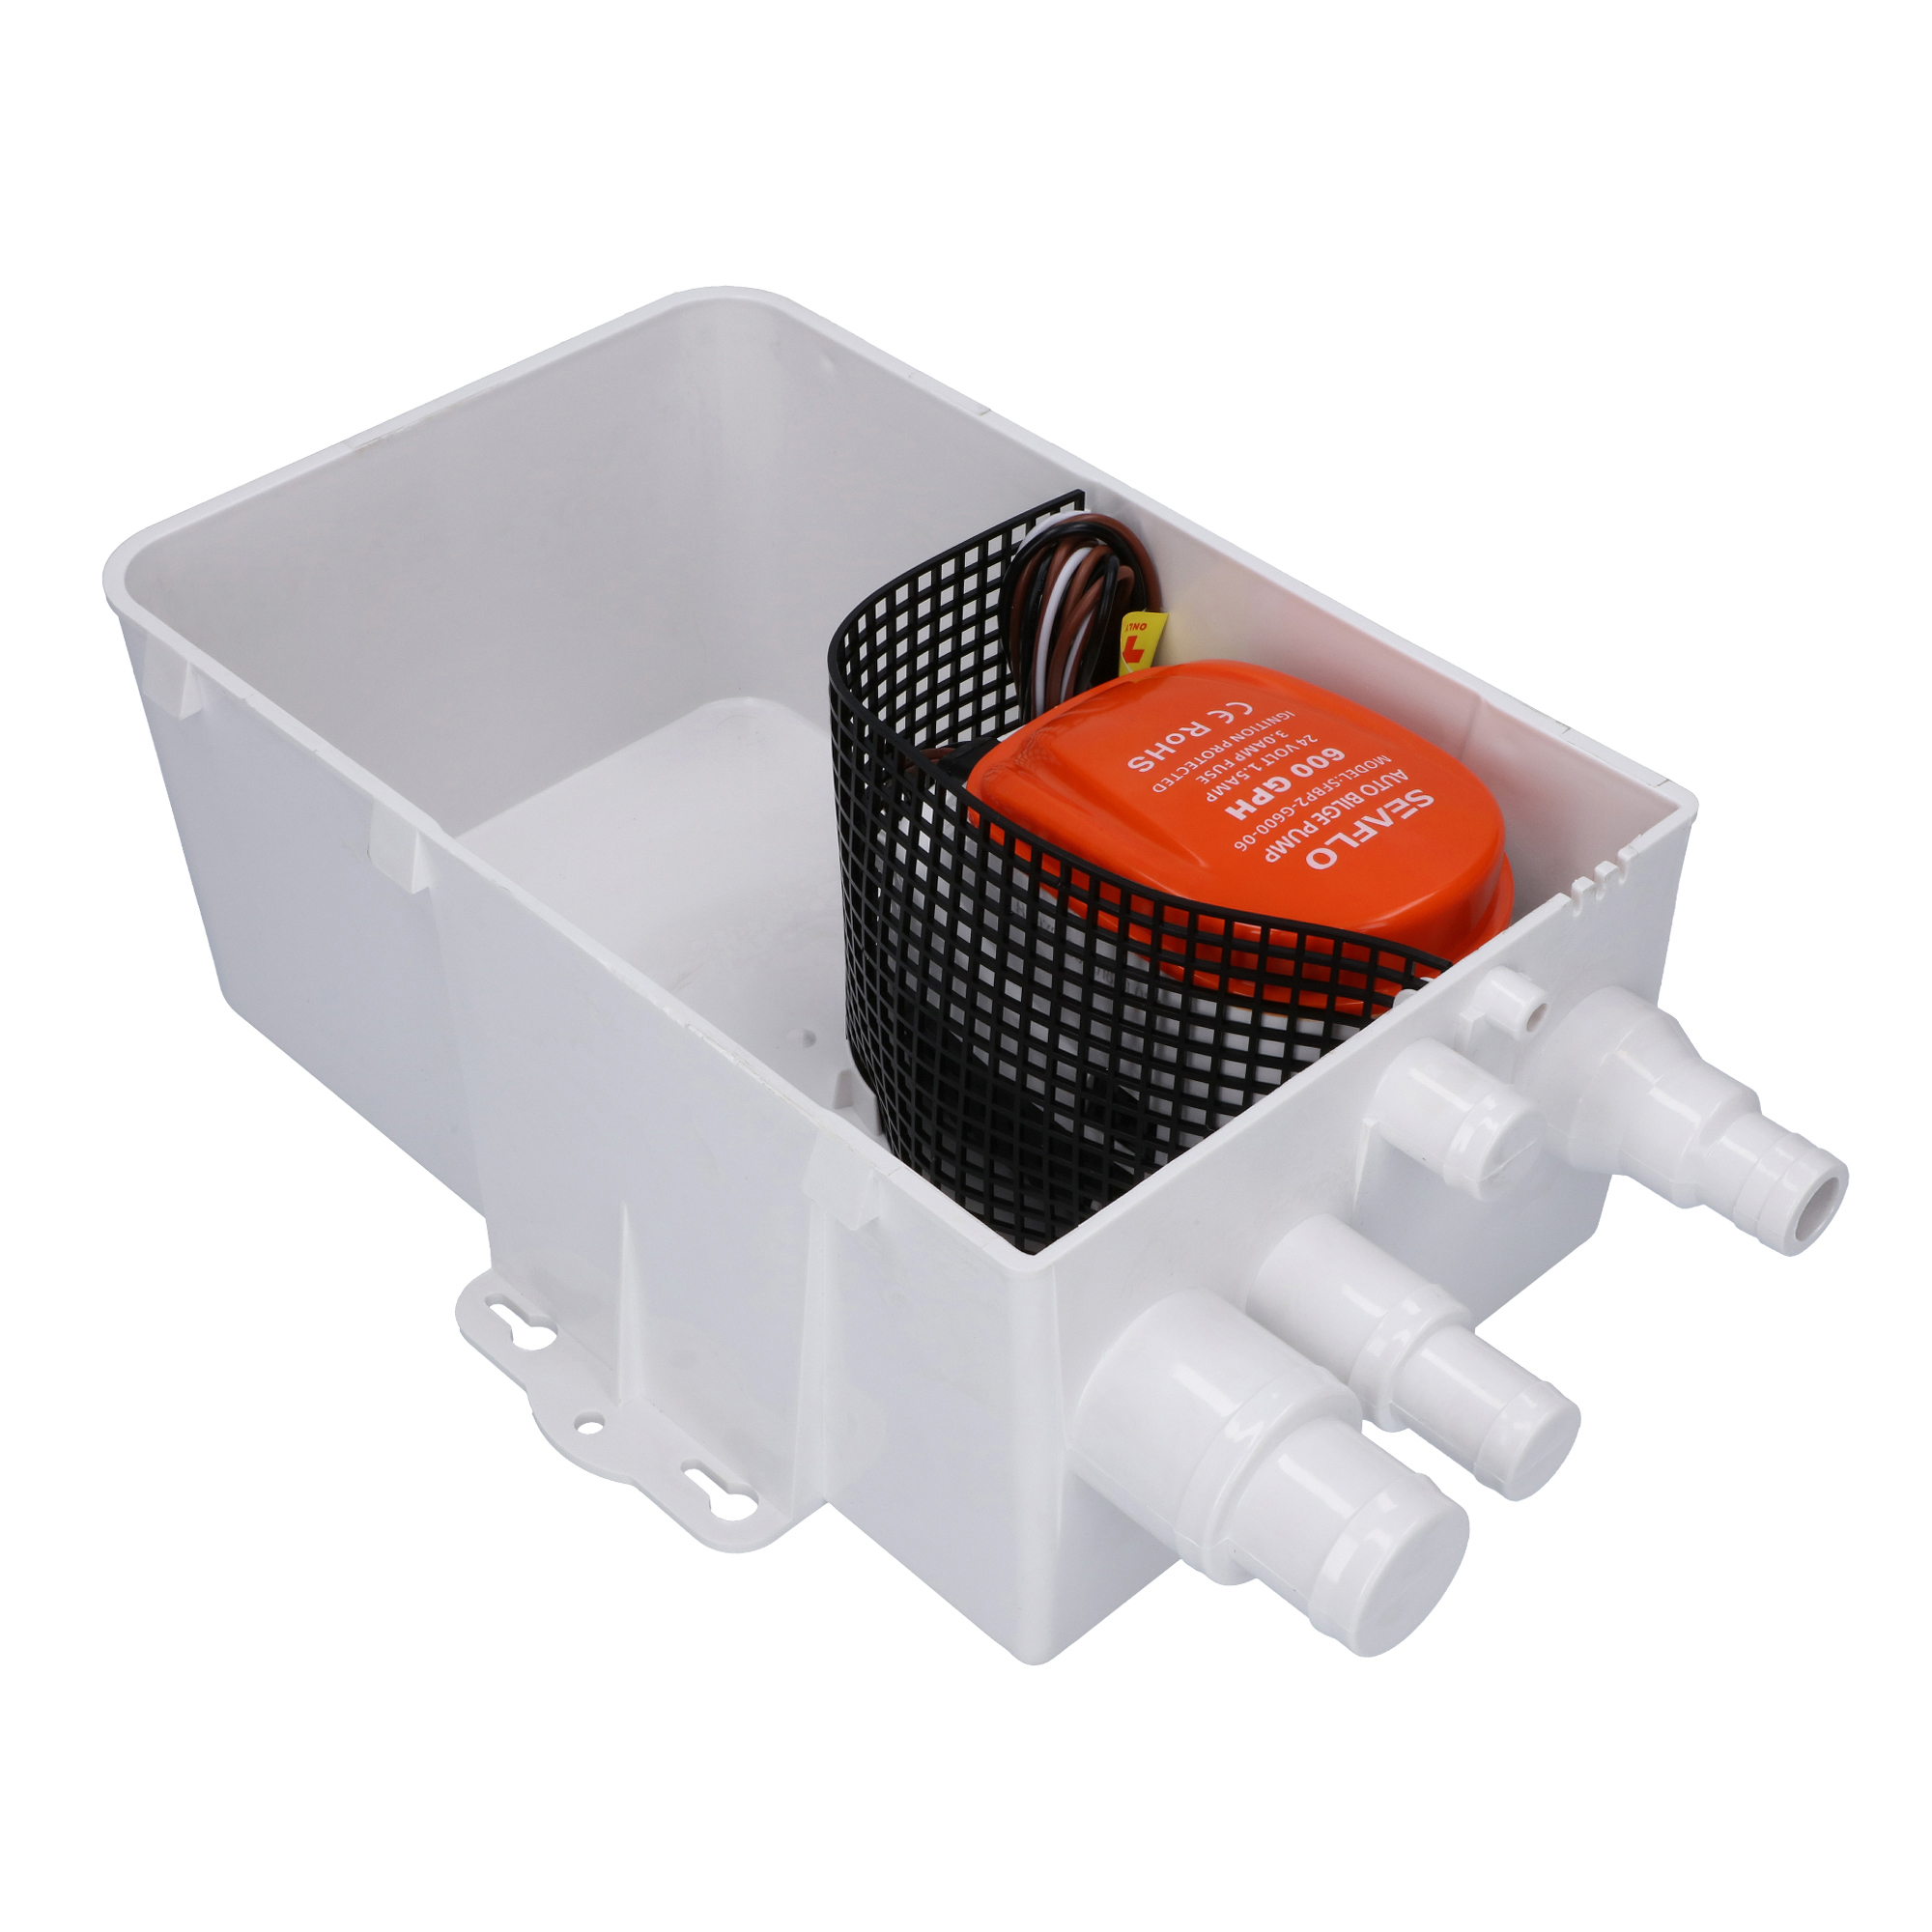 SEAFLO ® Automatik Duschpumpensystem 24 V Sahara 600